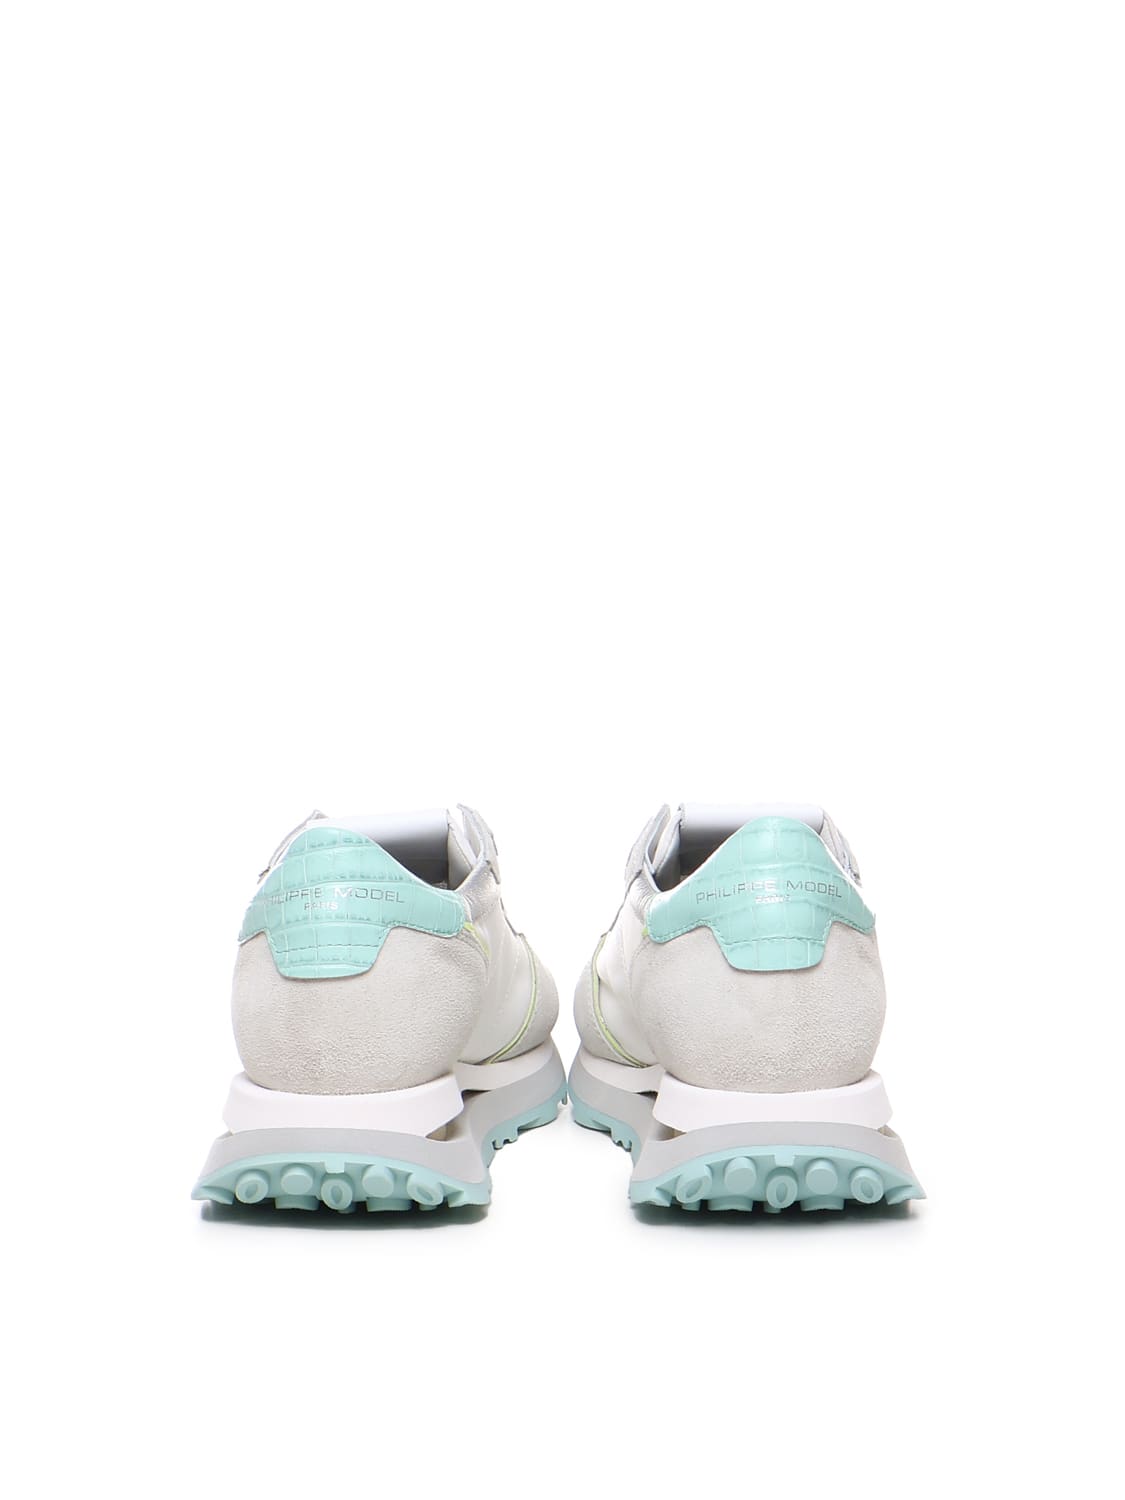 Shop Philippe Model Low Tropez Haute Sneakers In White, Light Blue